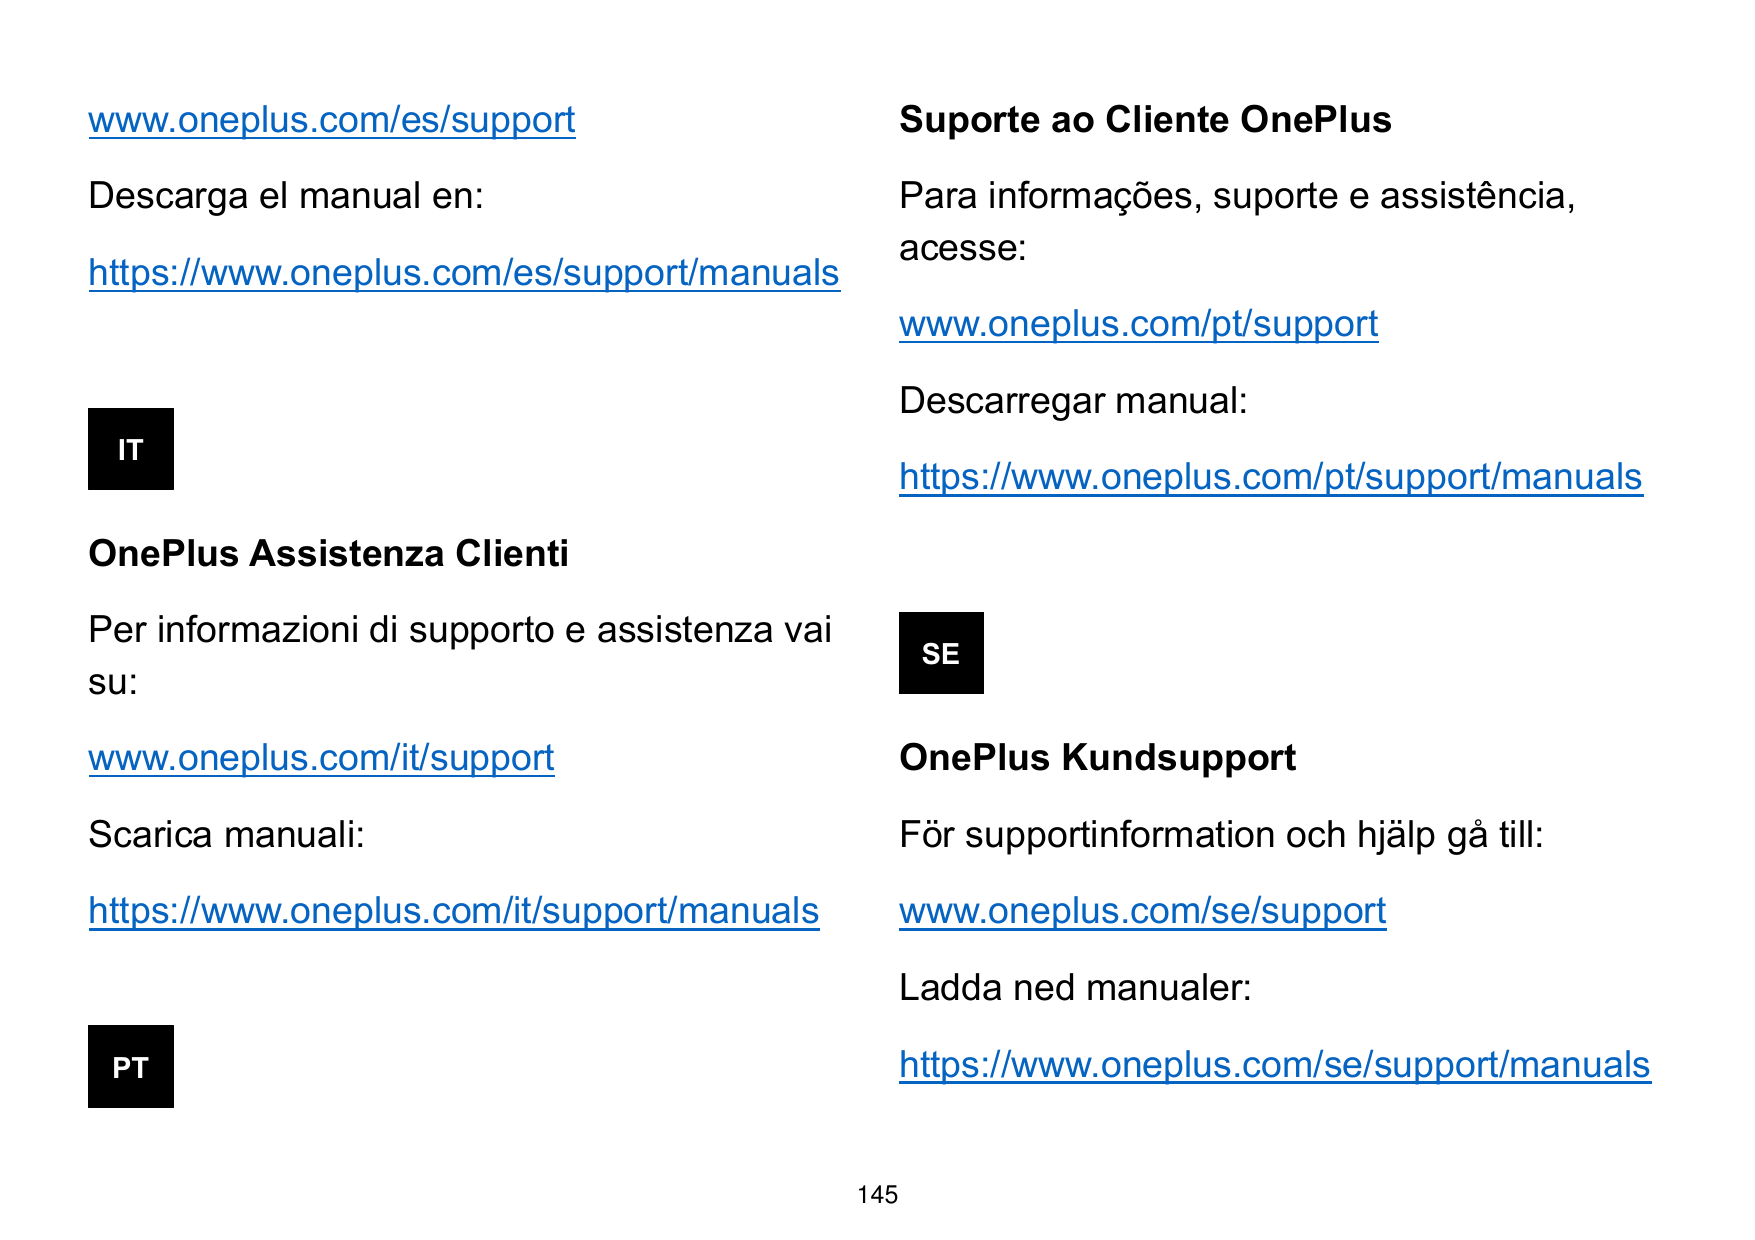 www.oneplus.com/es/supportSuporte ao Cliente OnePlusDescarga el manual en:Para informações, suporte e assistência,acesse:https:/